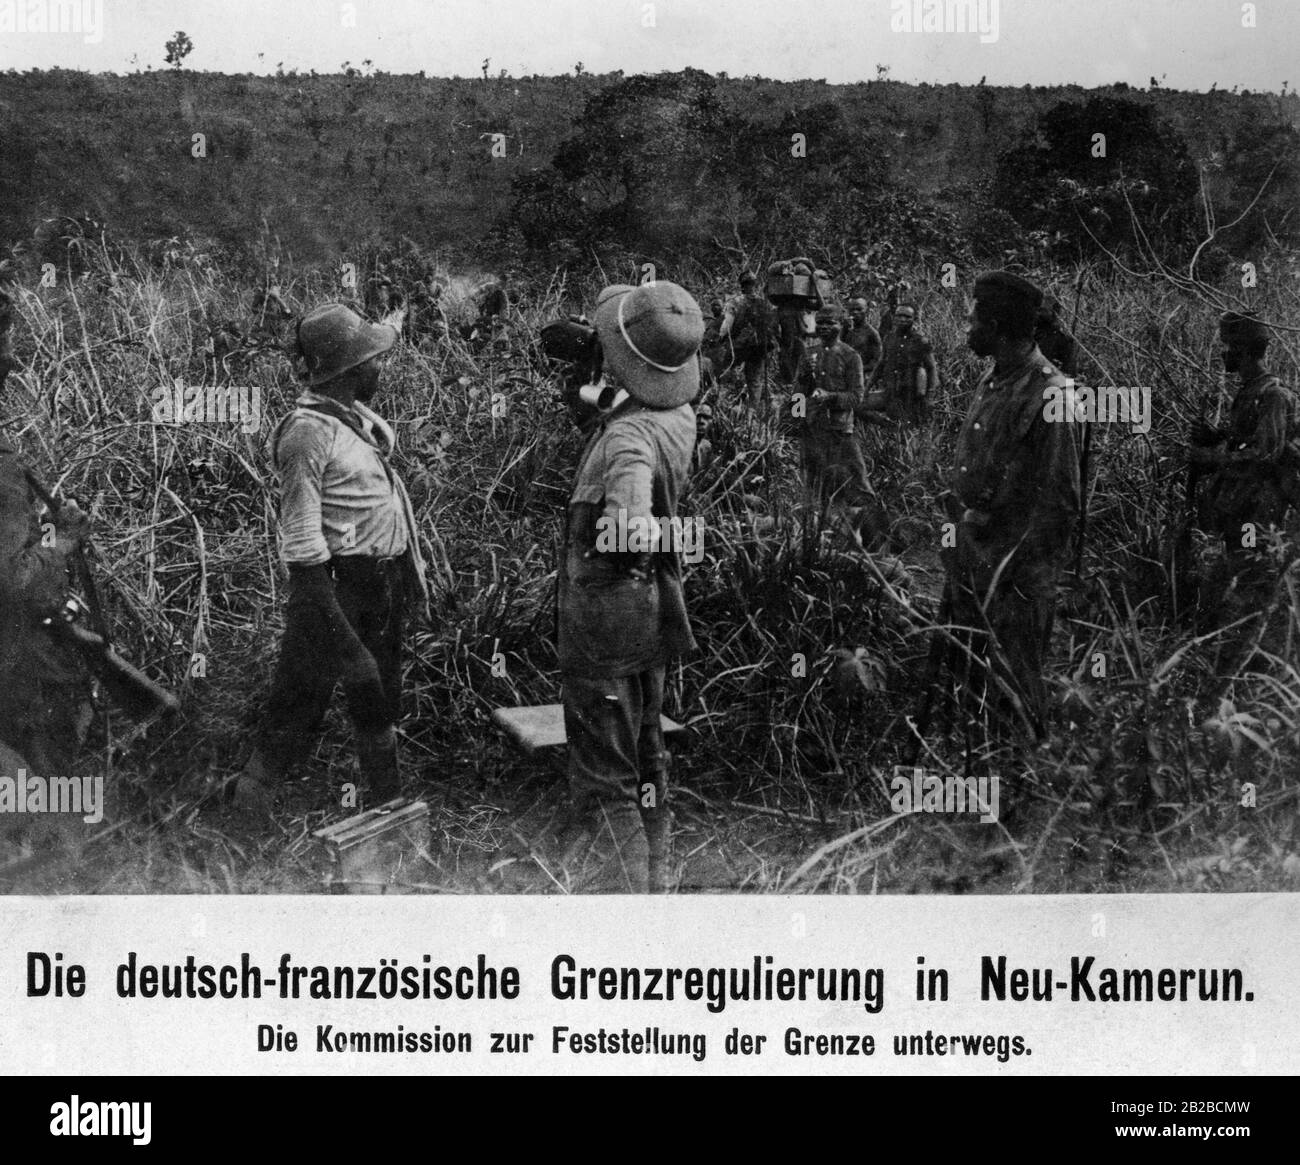 Die deutsch-französische Kommission in der deutschen Kolonie Kamerun auf dem Weg, die Grenze zwischen der deutschen Kolonie Kamerun und der französischen Kolonie Kongo zu bestimmen. Einheimische begleiten sie. Stockfoto